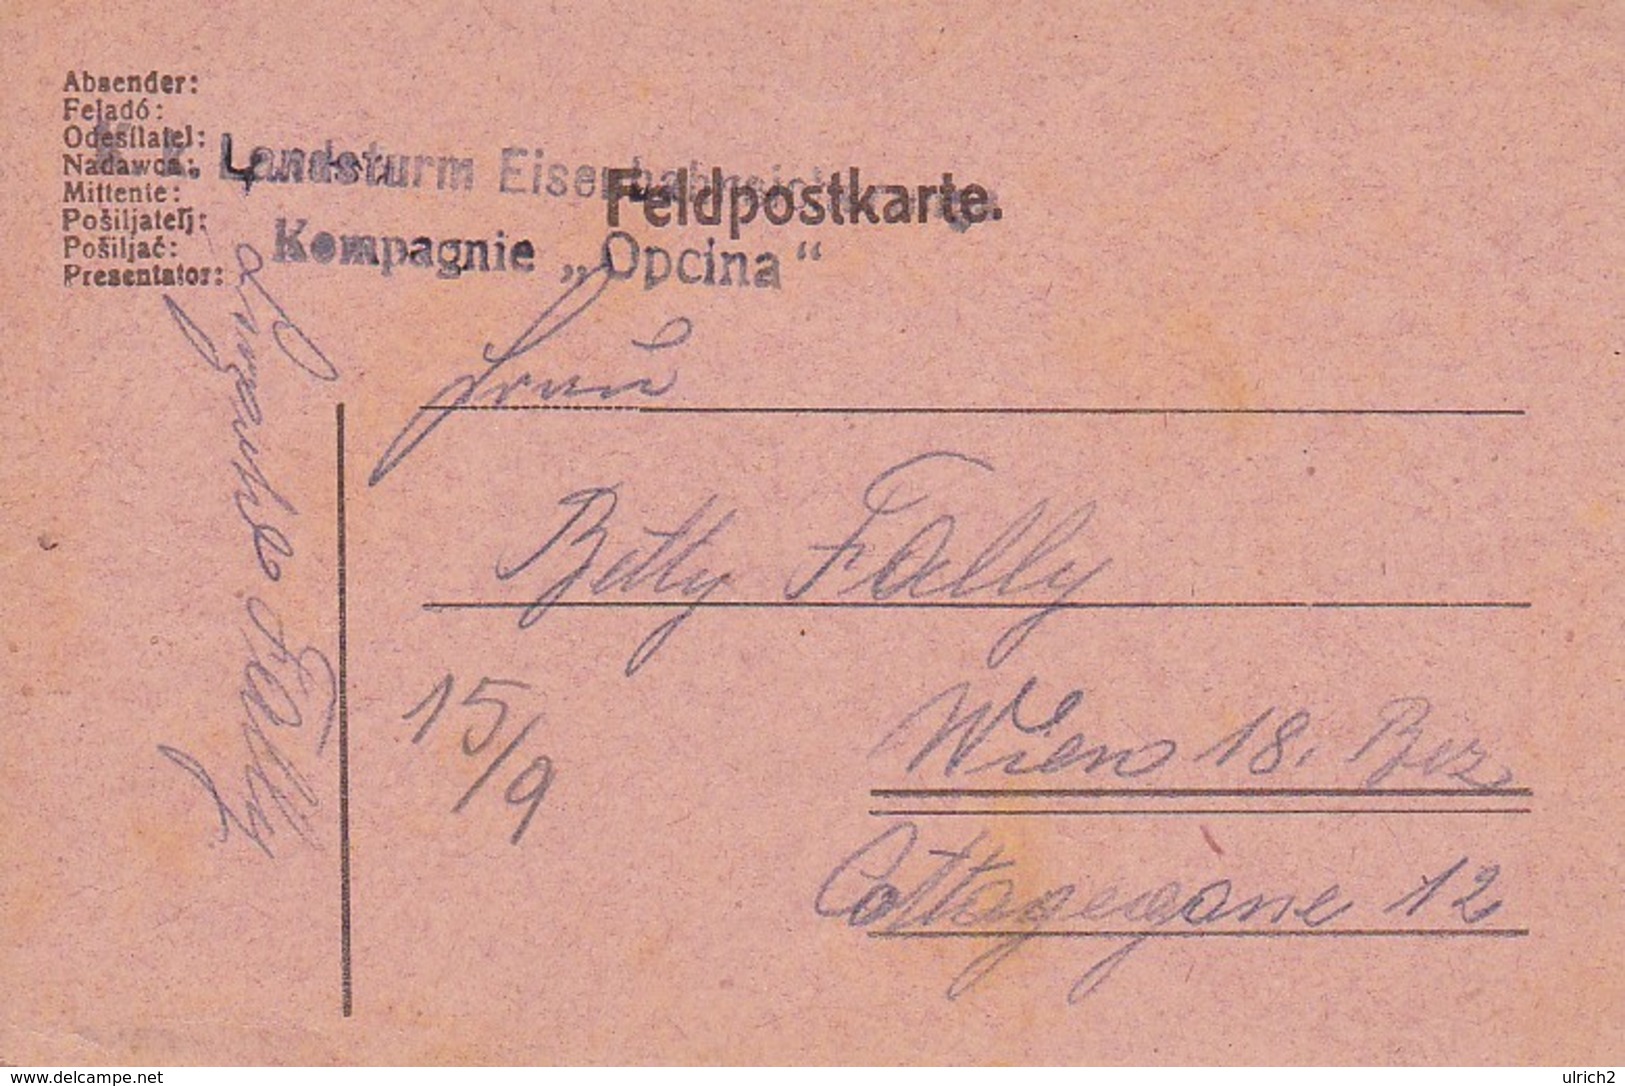 Feldpostkarte - K.k. Landsturm Eisenbahn Sicherungs Kompagnie Opina  - 1917 (36068) - Briefe U. Dokumente